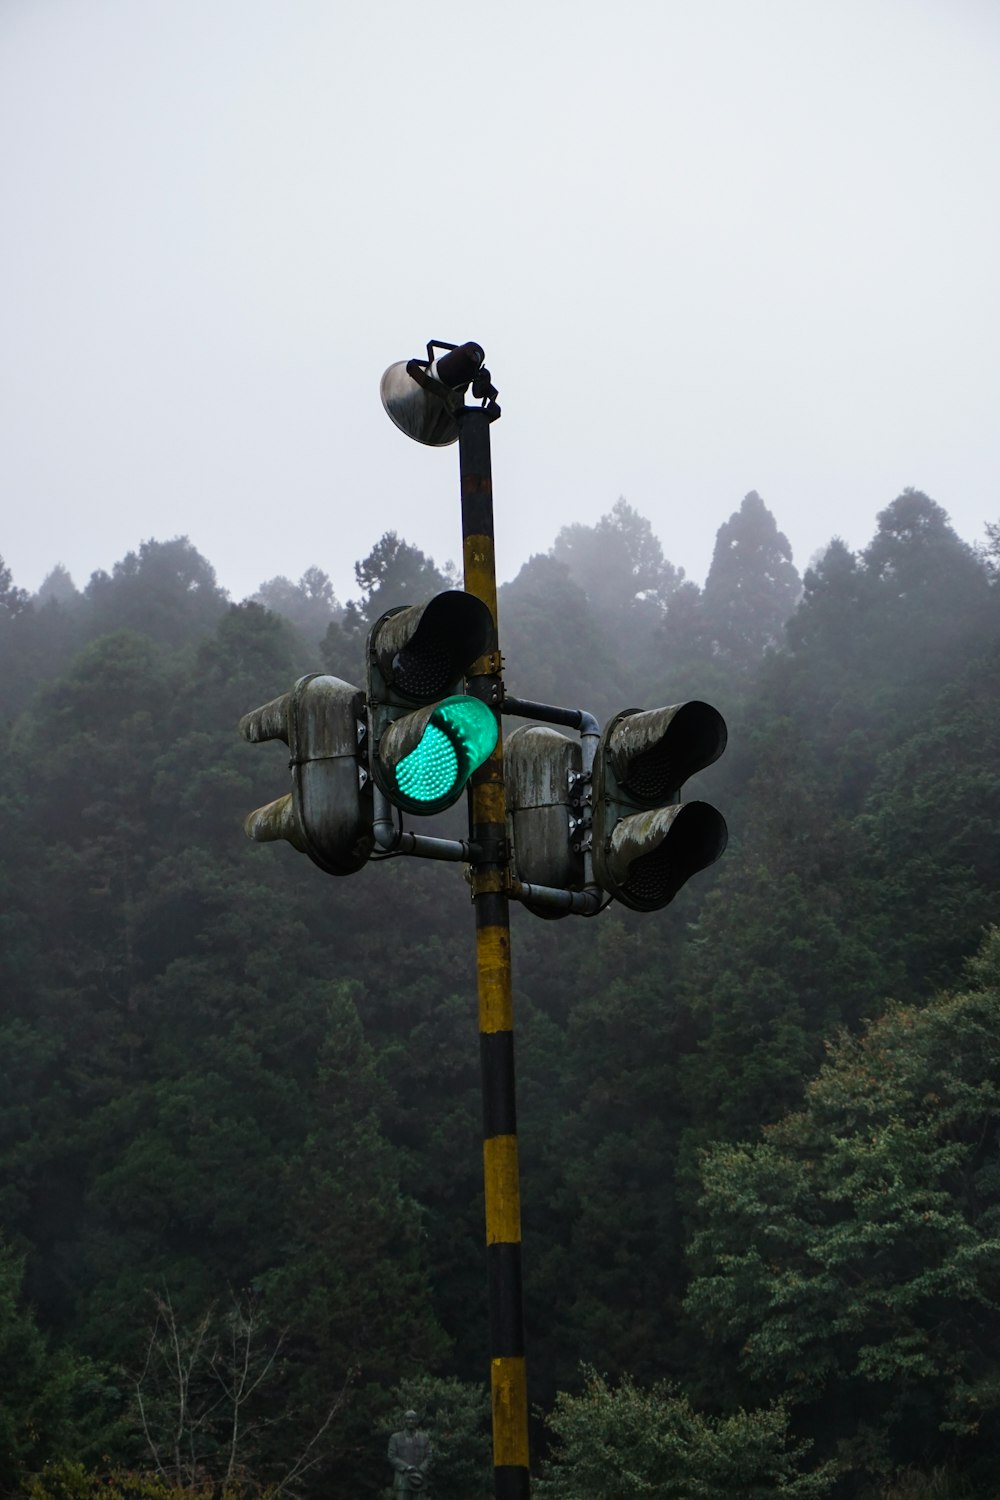 traffic light on green light